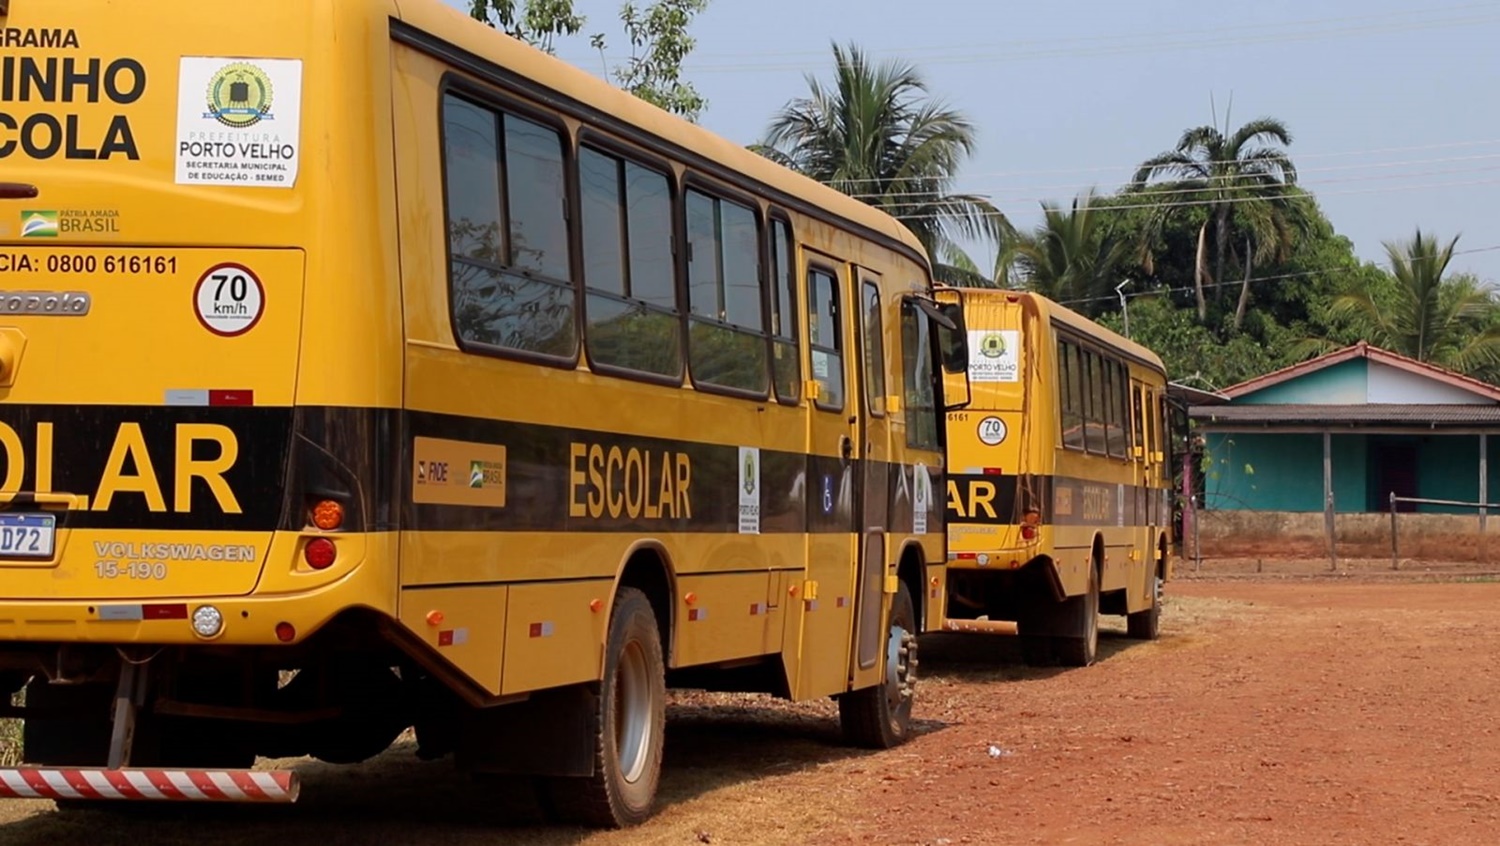 PORTO VELHO: Transporte escolar municipal está pronto para atender zona rural